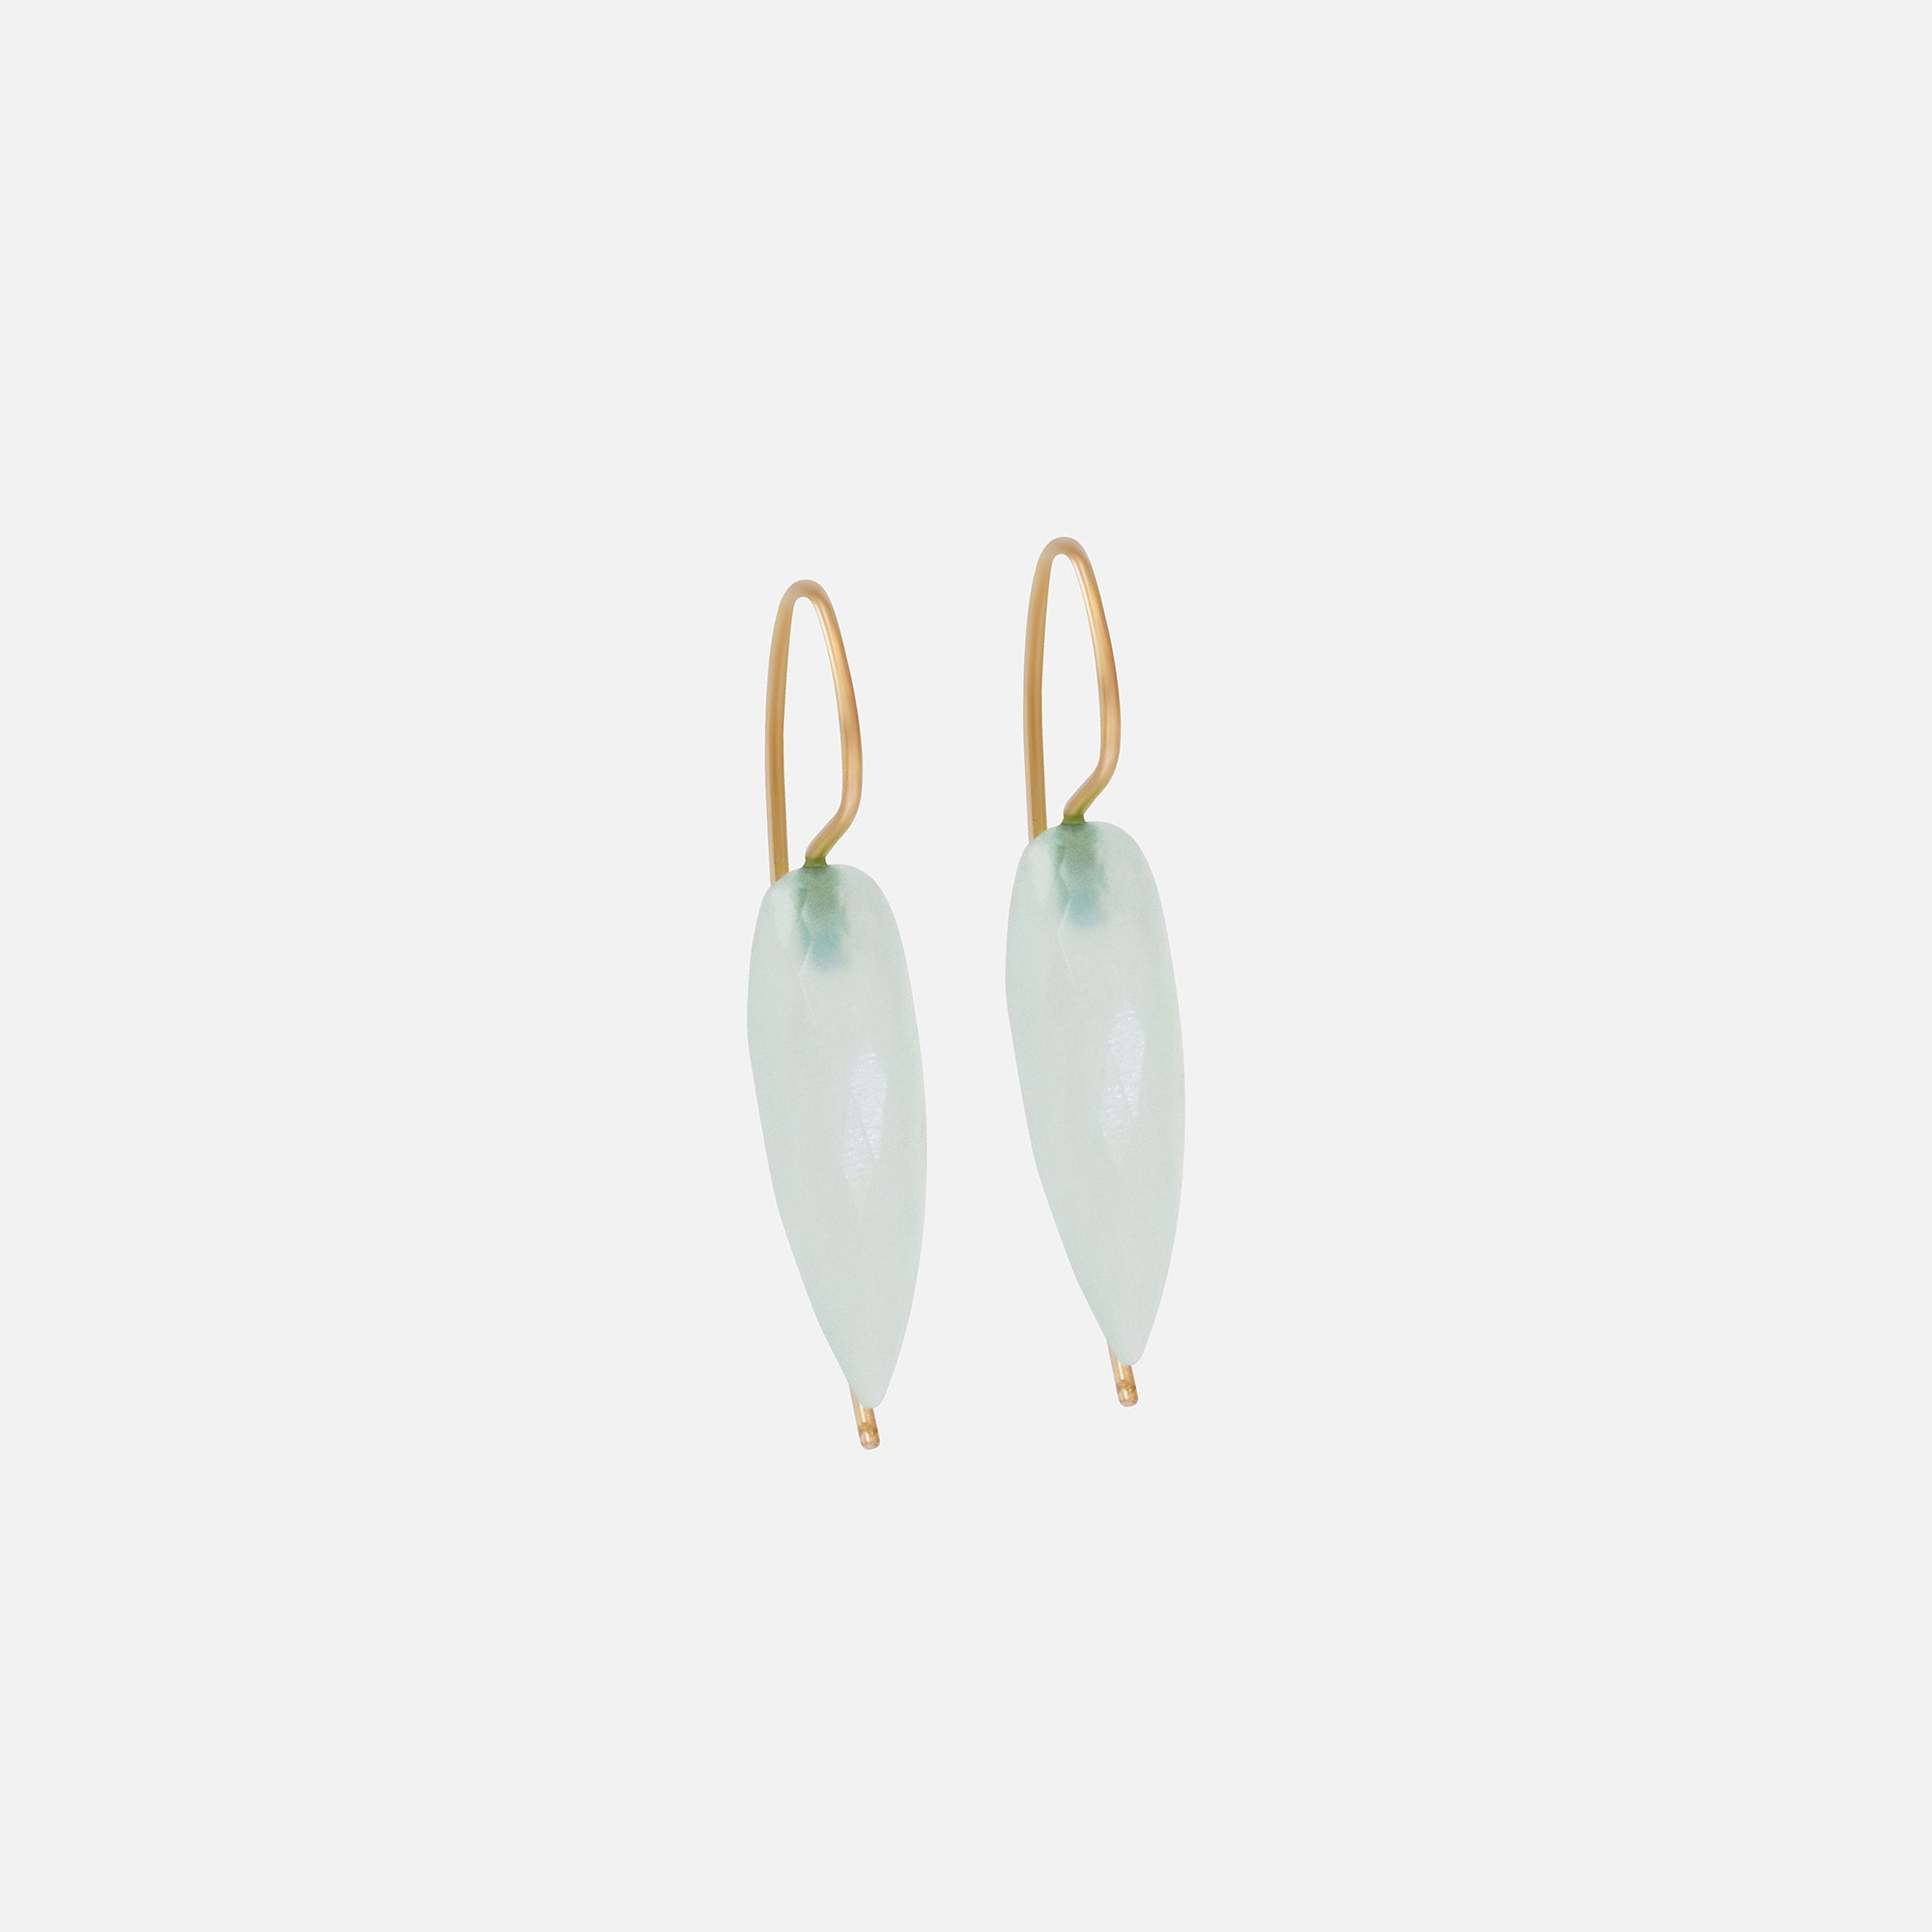 Swan Teal Chalcedony Earrings By Tricia Kirkland in earrings Category